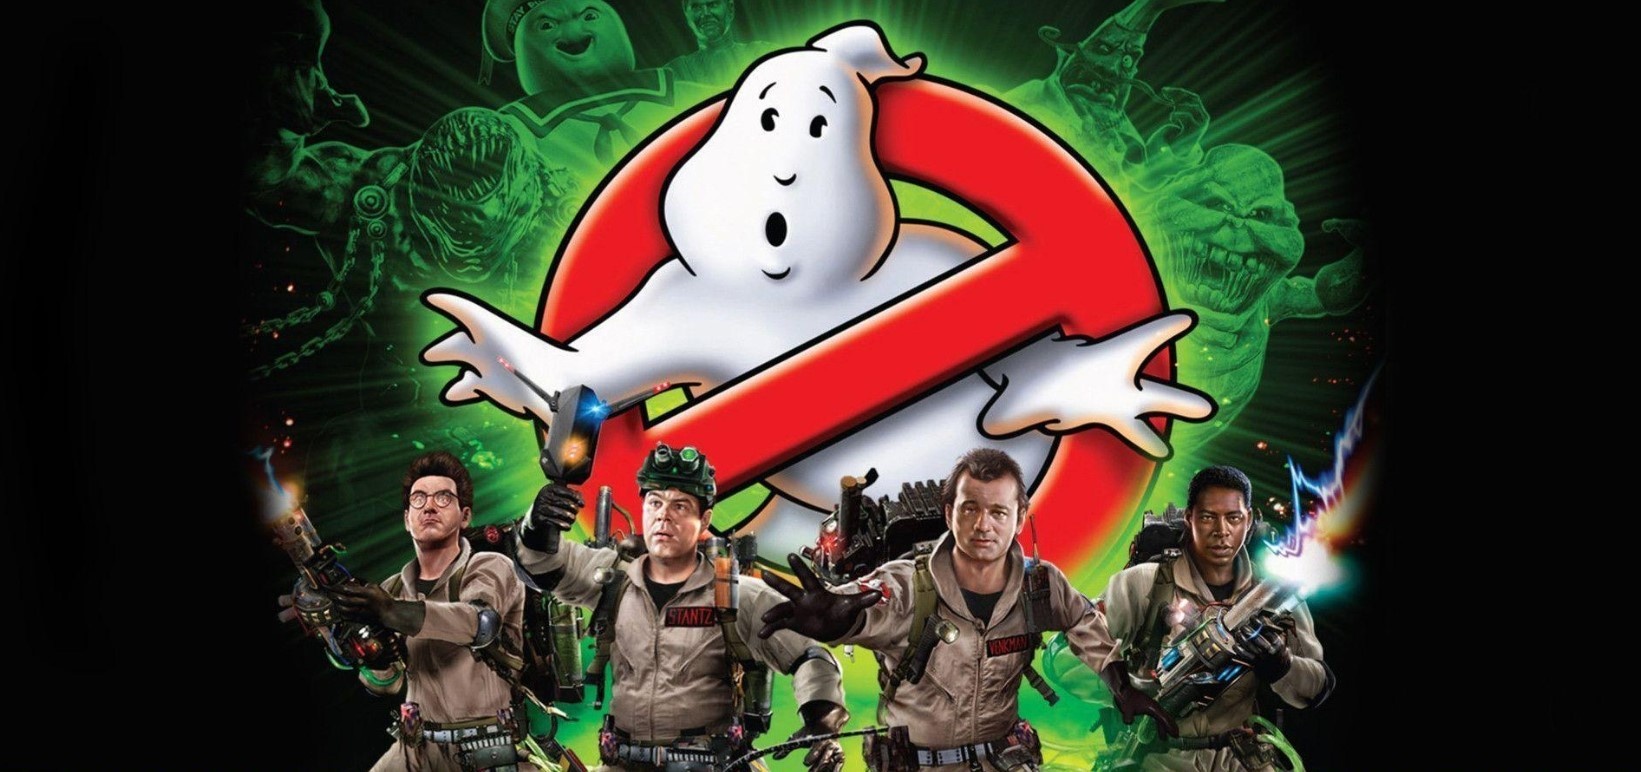 Ремастер Ghostbusters выйдет 4 октября на PS4, Xbox One, Switch и РС